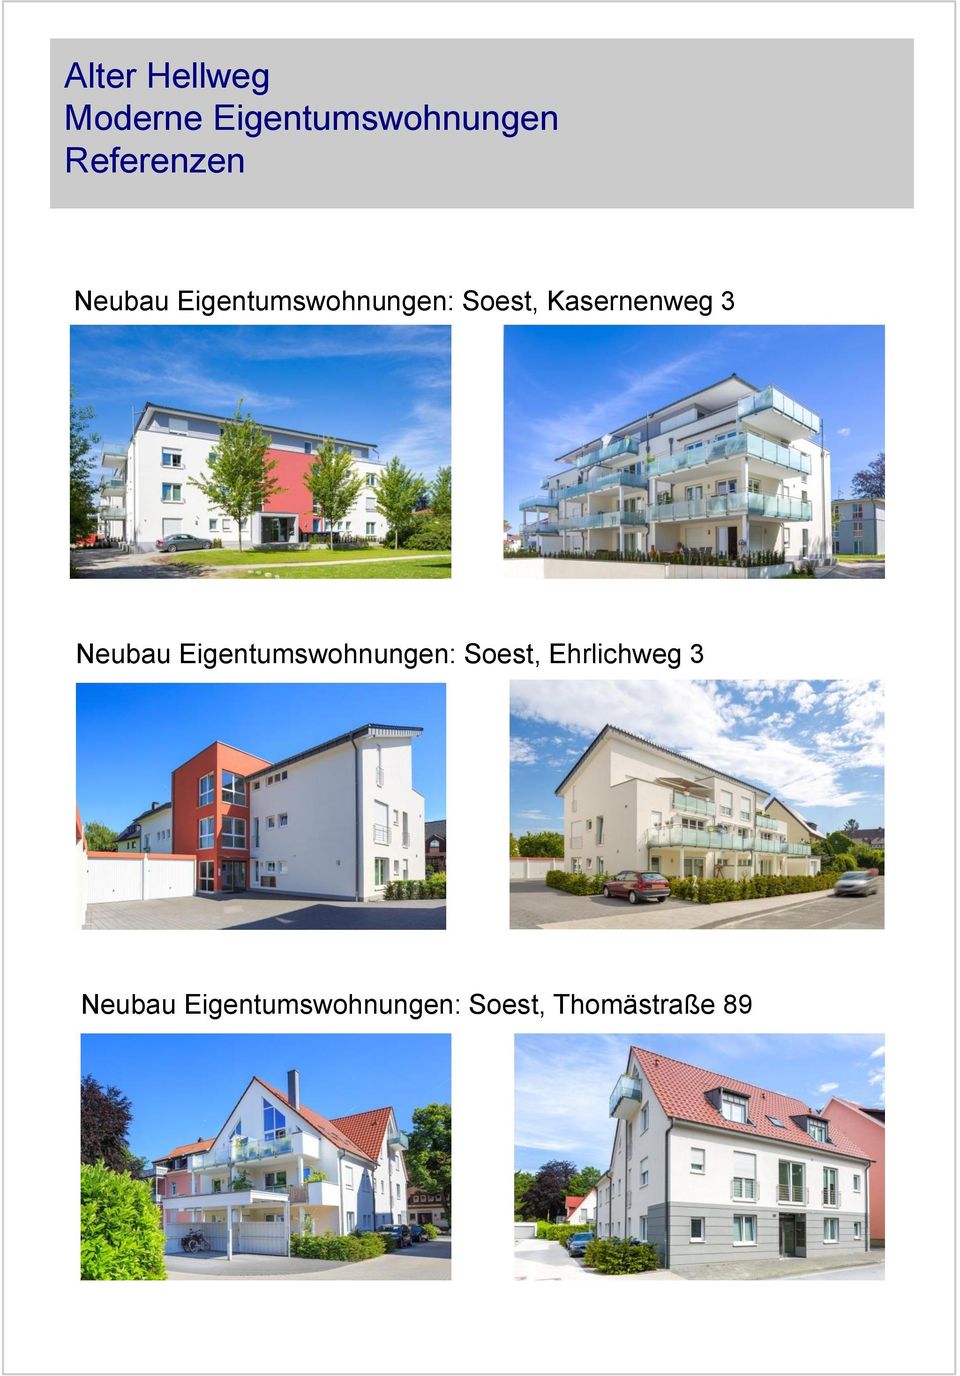 Eigentumswohnungen: Soest, Ehrlichweg